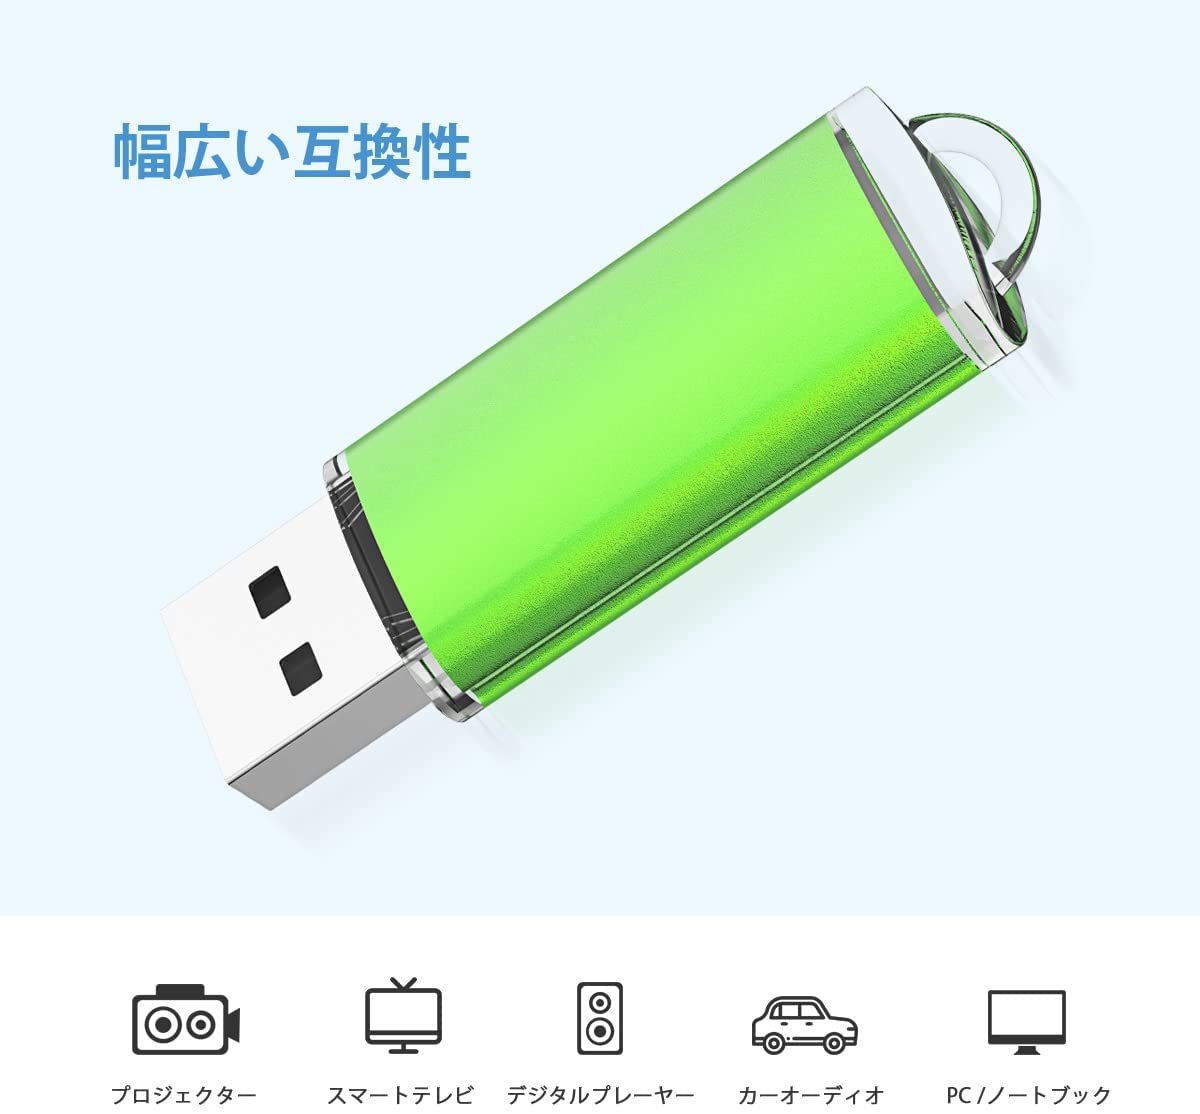 209円 正規逆輸入品 Exmapor USB2.0 1GB フラッシュドライブ ストラップ付き ③